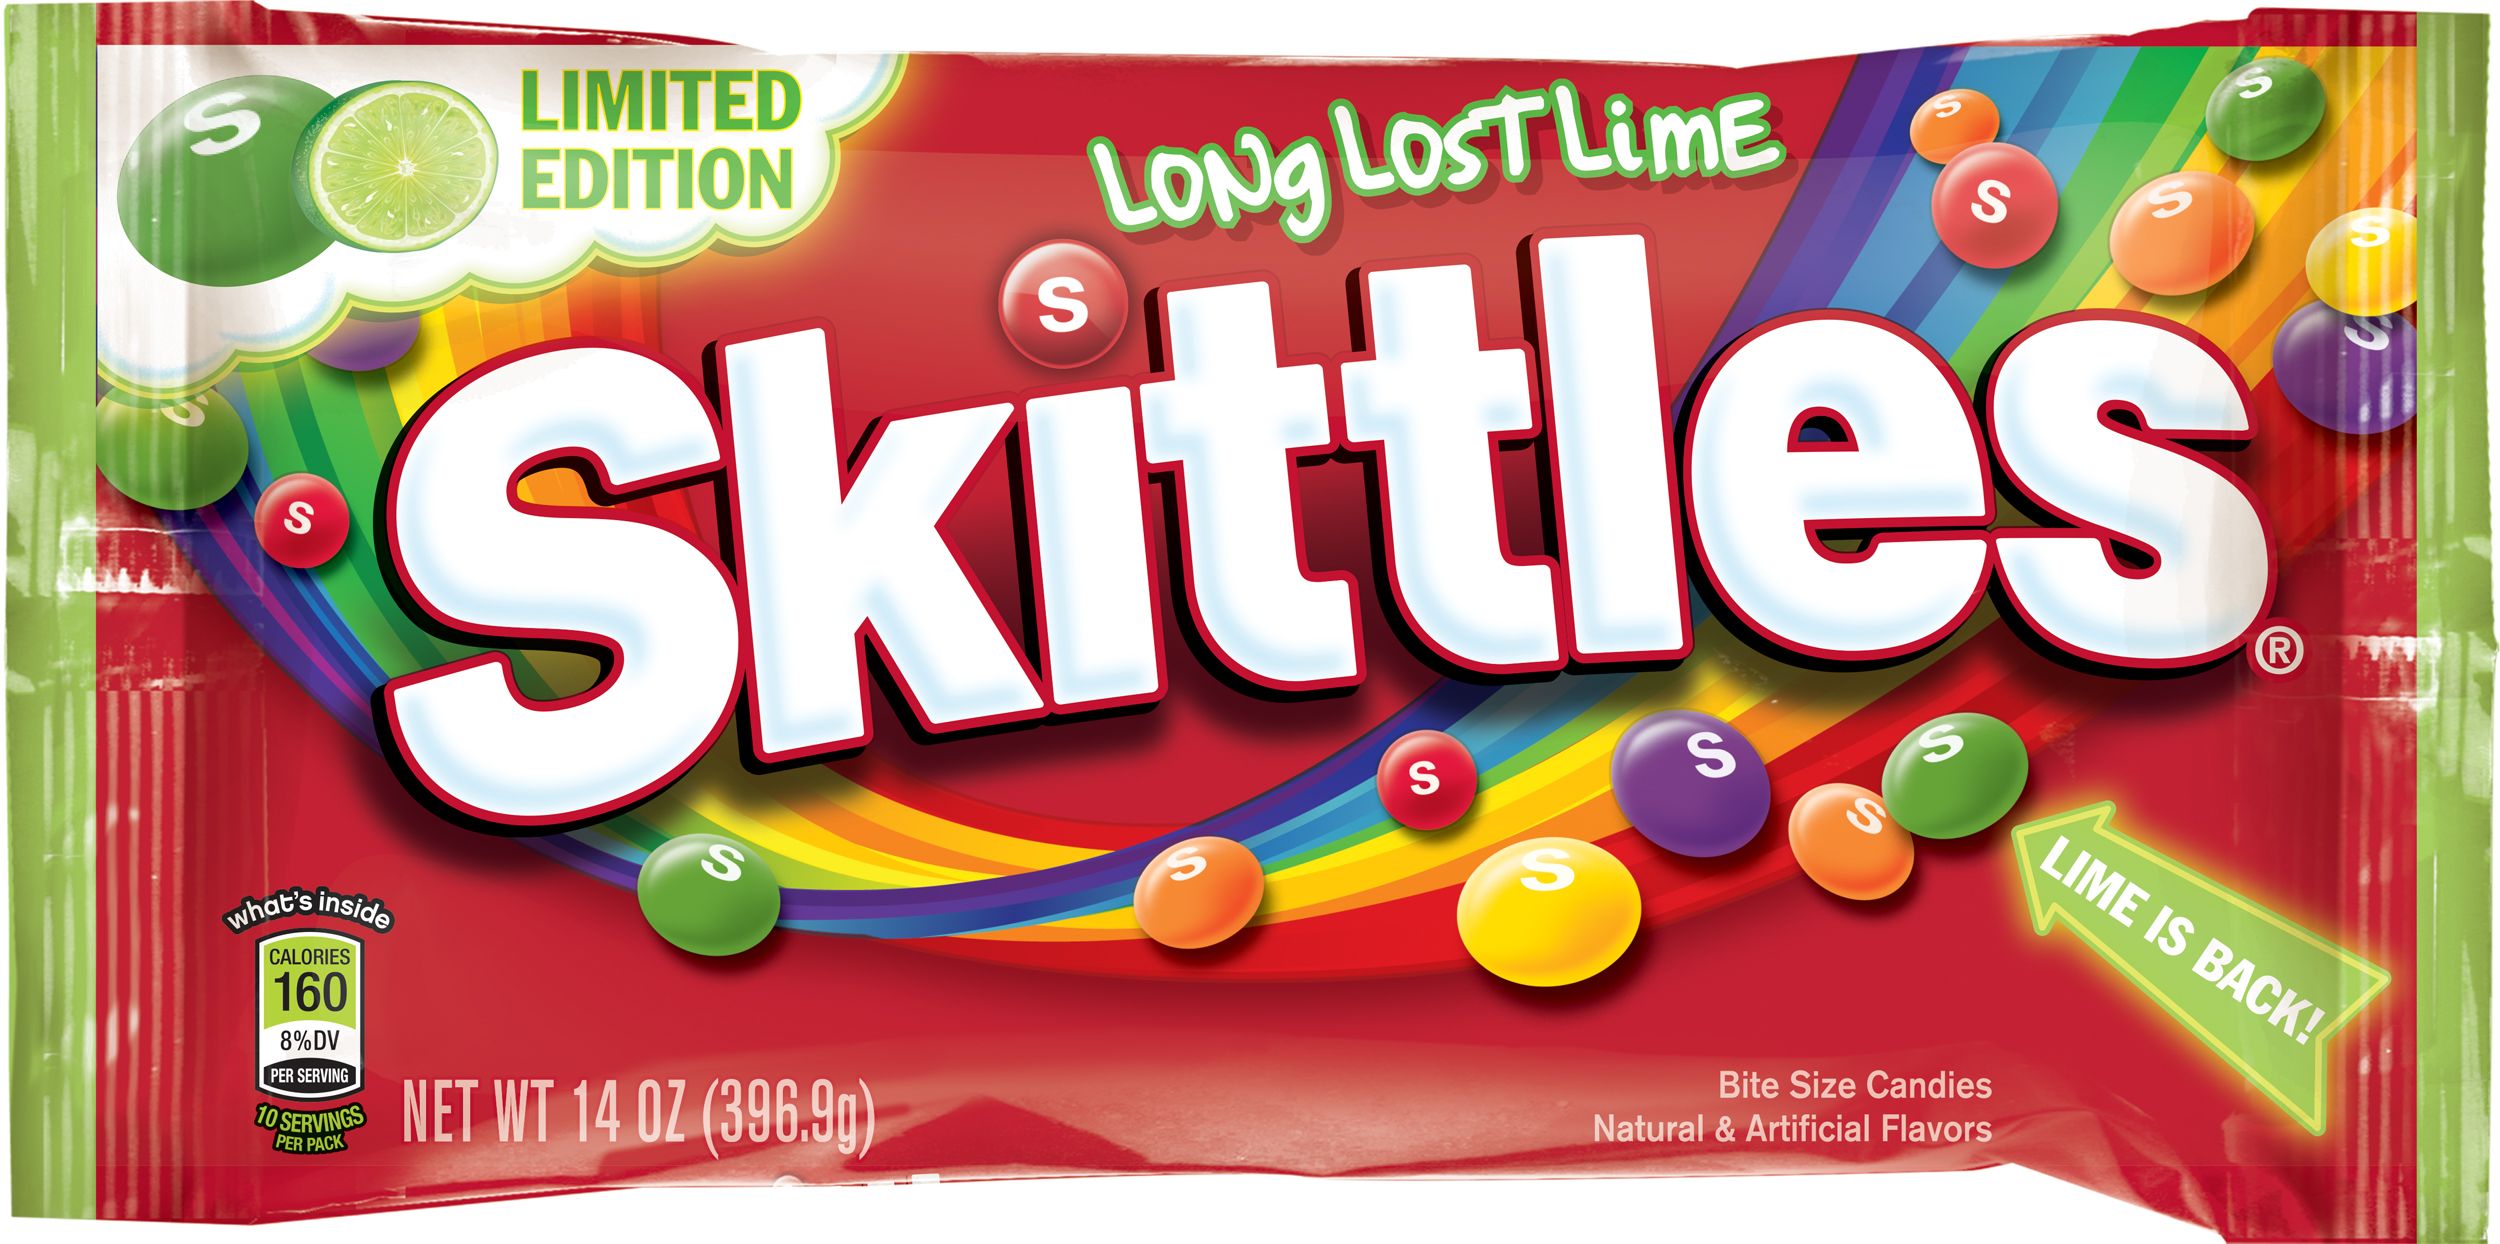 Скитлс вызывает рак. СКИТЛС. Skittles конфеты. СКИТЛС маленькая пачка. Skittles Limited Edition.